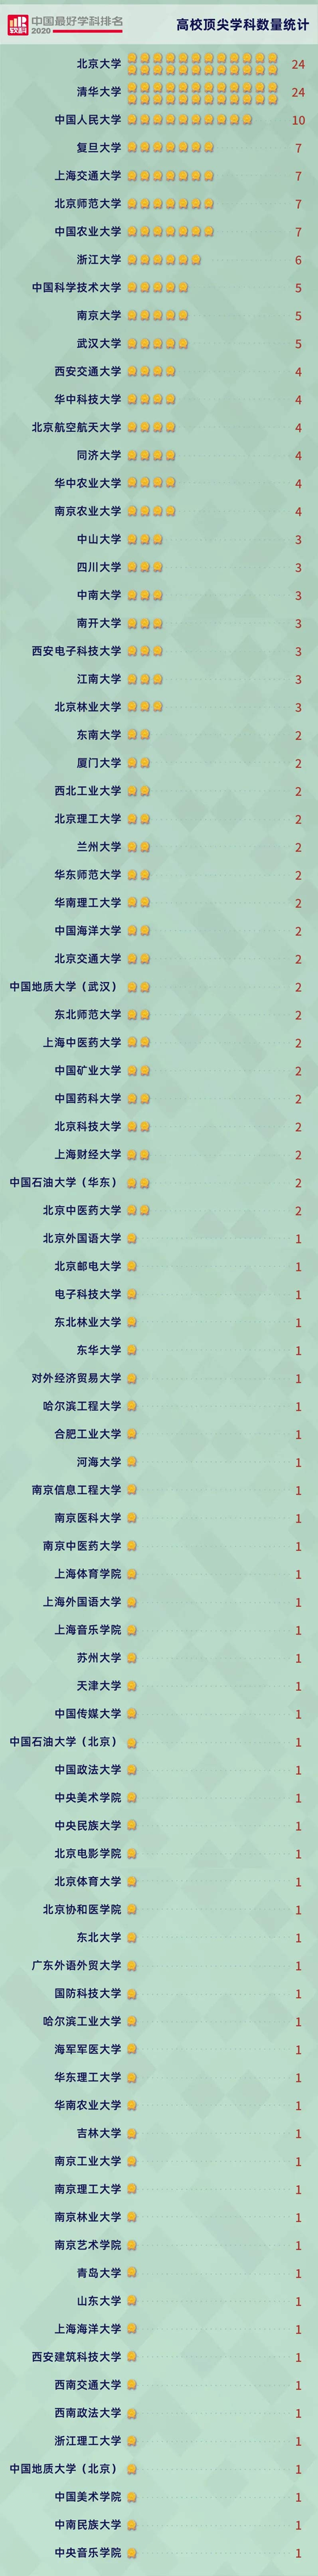 2020学科排名靠前的_软科发布2020中国最好学科排名:北大清华并列第